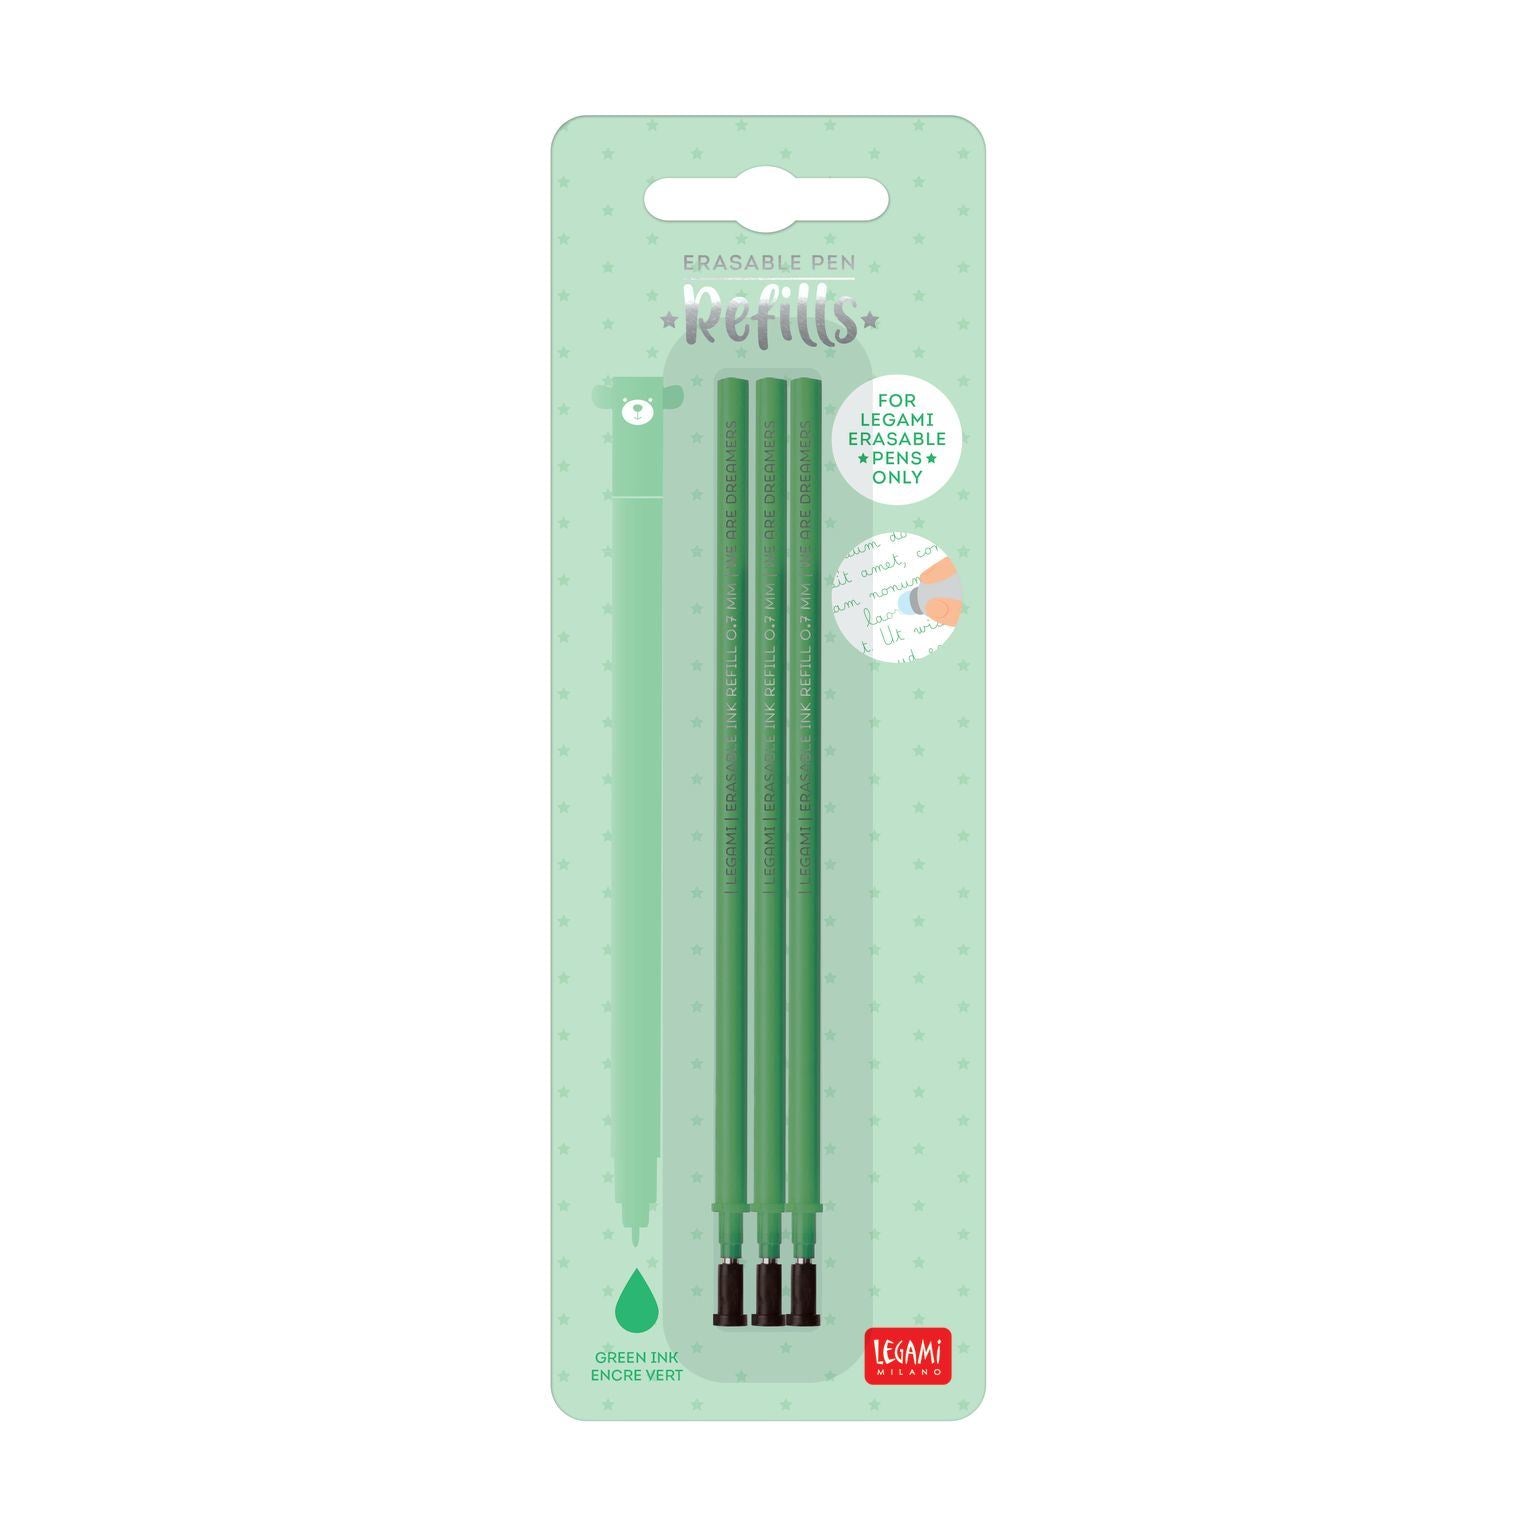 Legami Green Erasable Pen Refills - 3 Pack